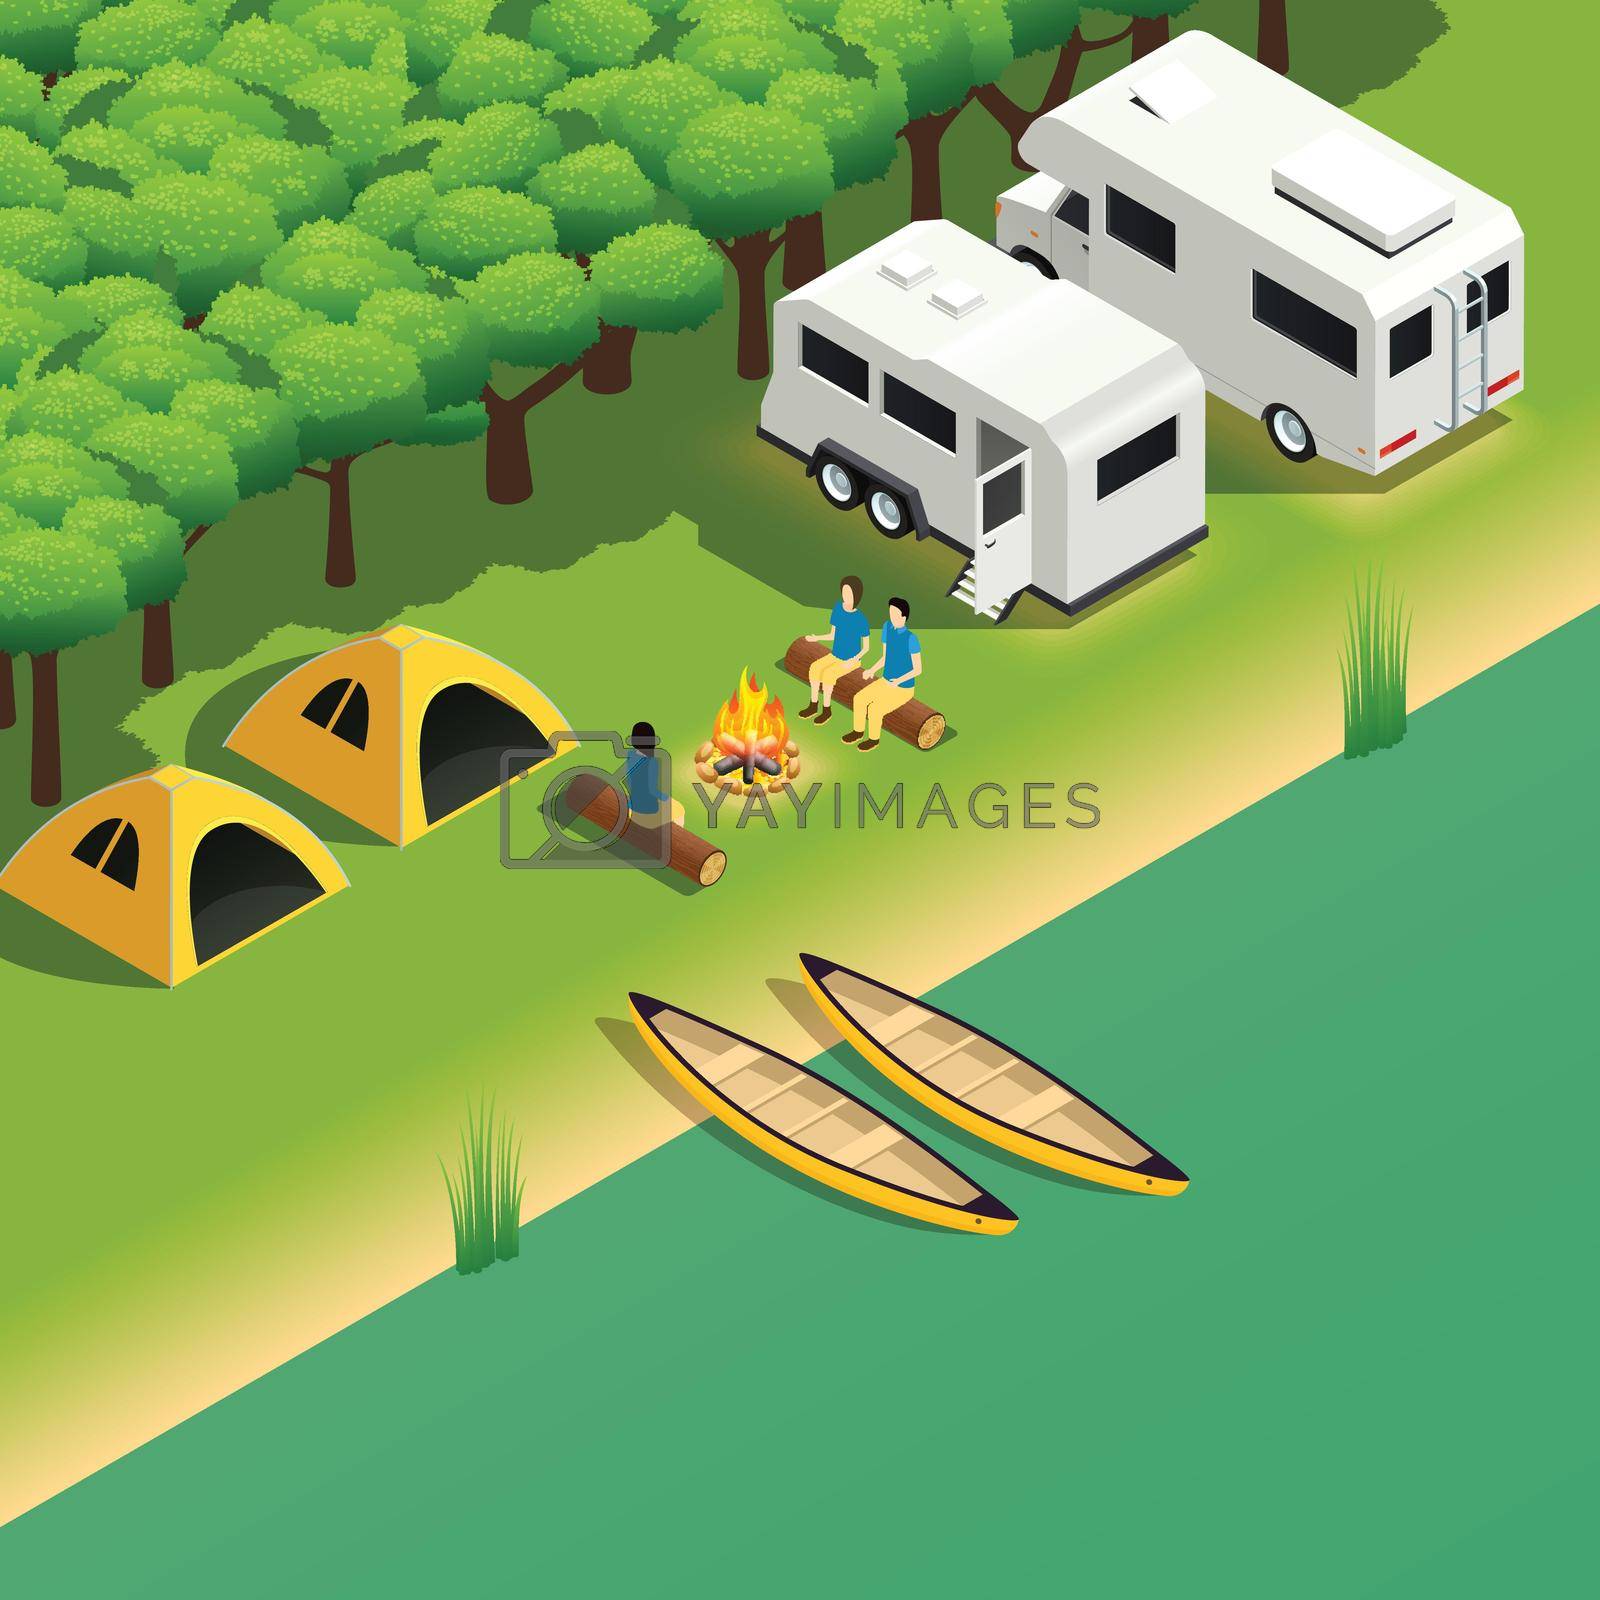 Royalty free image of Canoeing Kayaking Camping Isometric View by mstjahanara